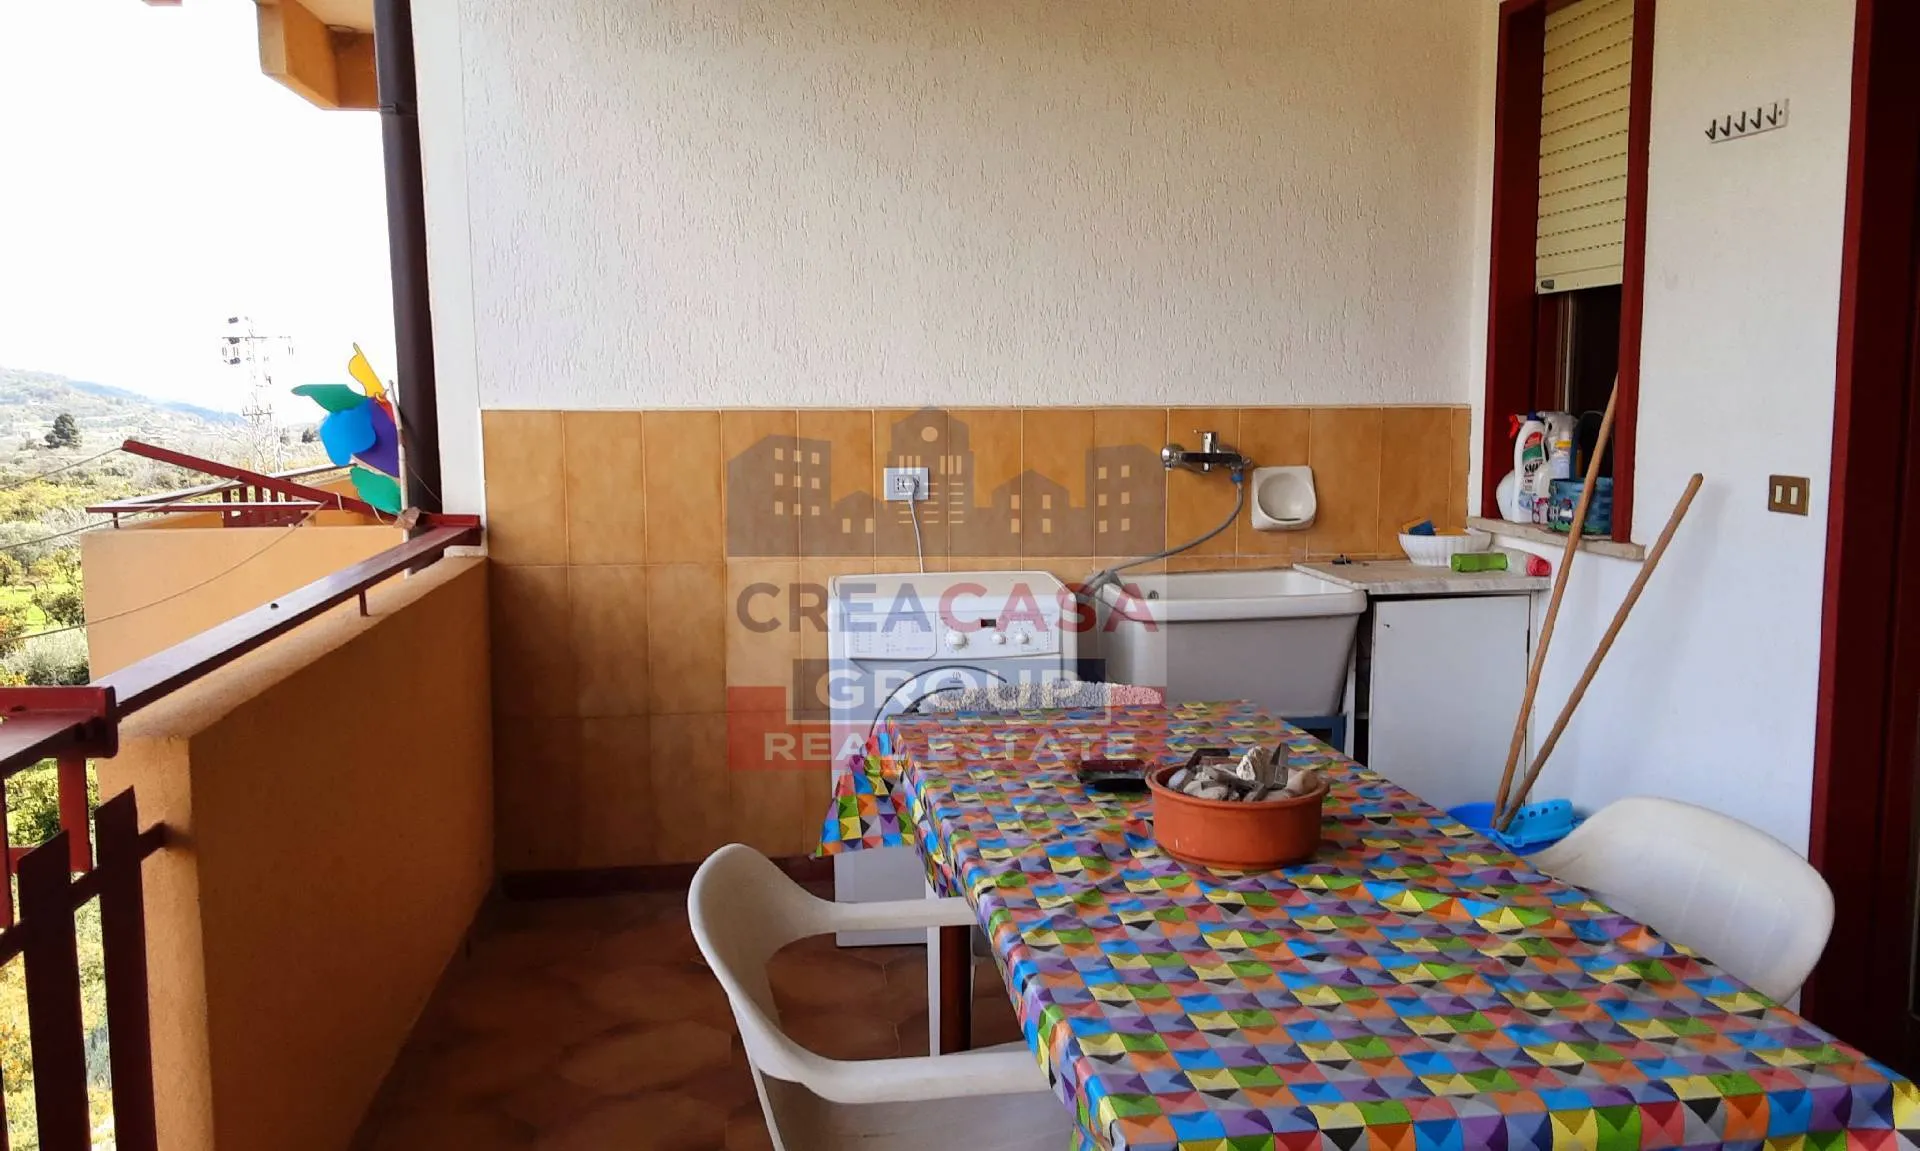 Immagine per Appartamento in vendita a Francavilla di Sicilia via regina Elena